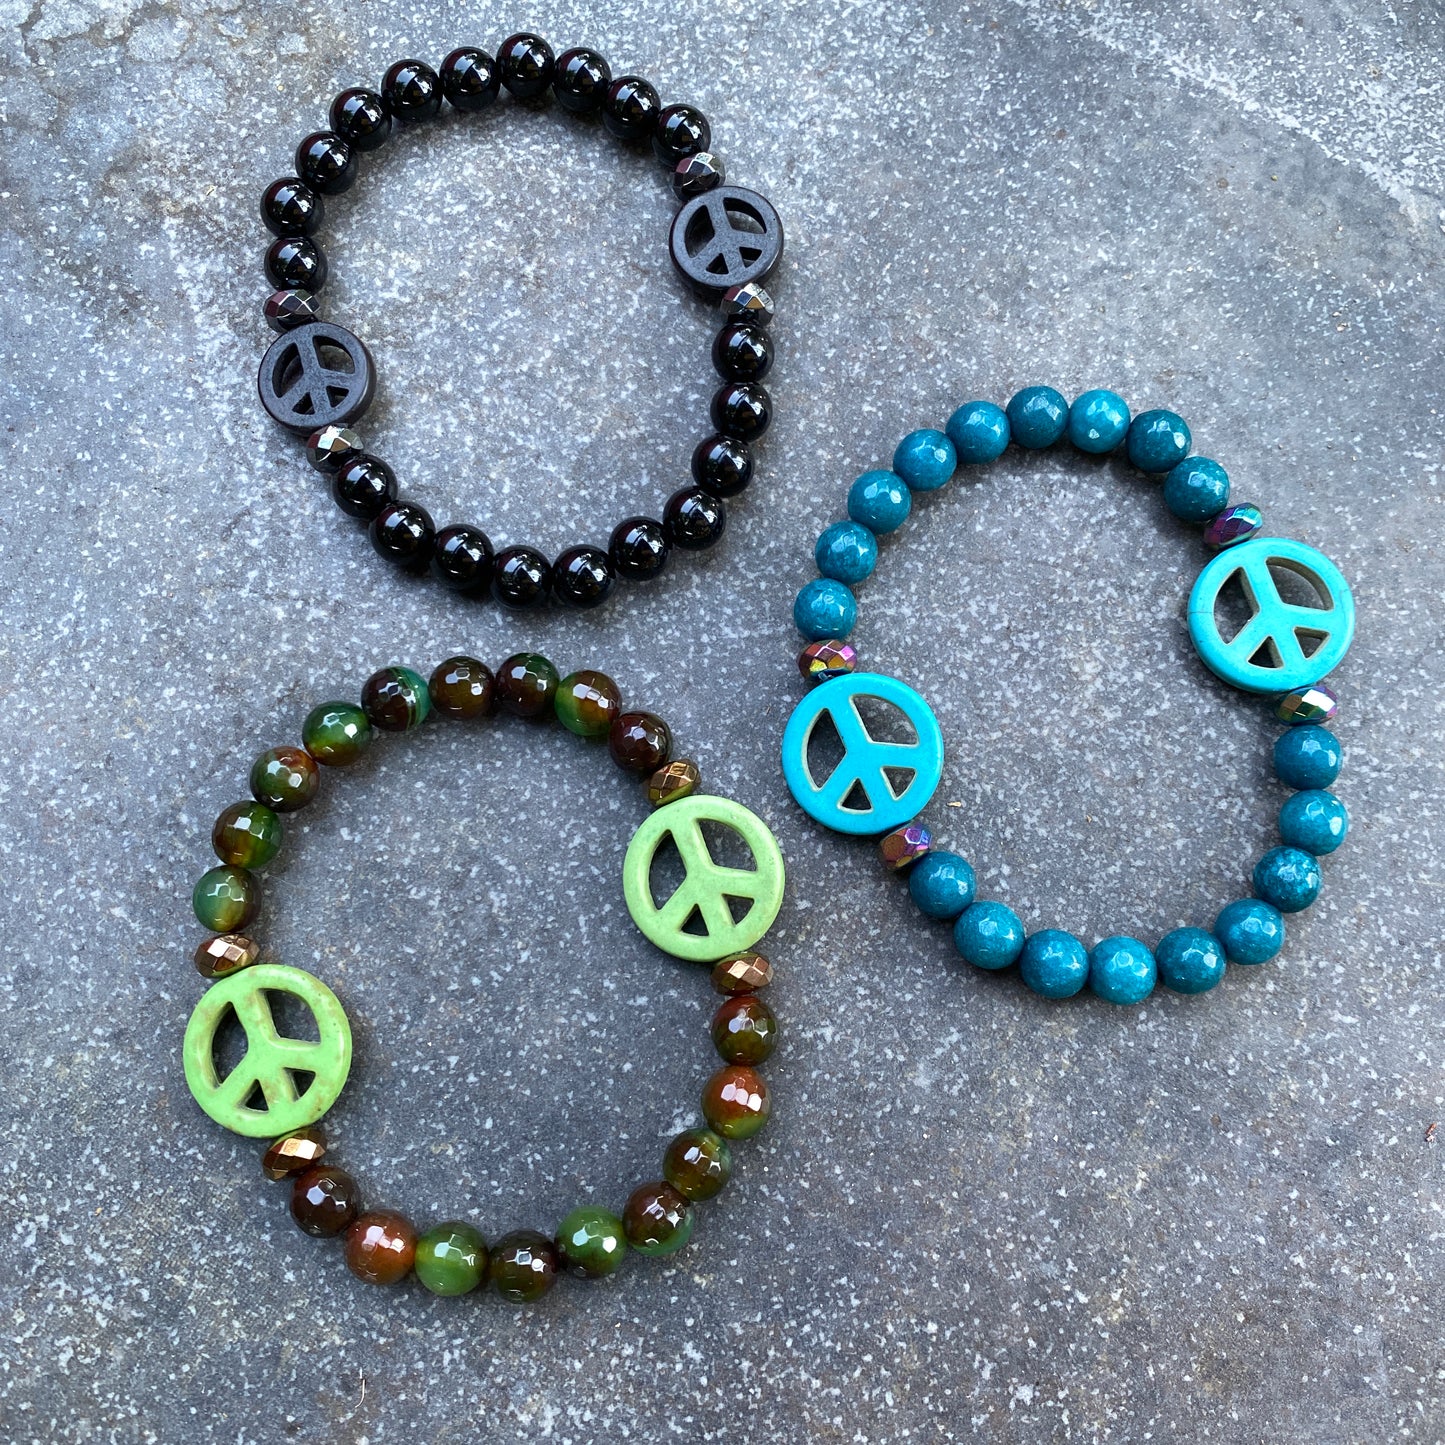 Gemstone Peace Bracelets, various sizes.